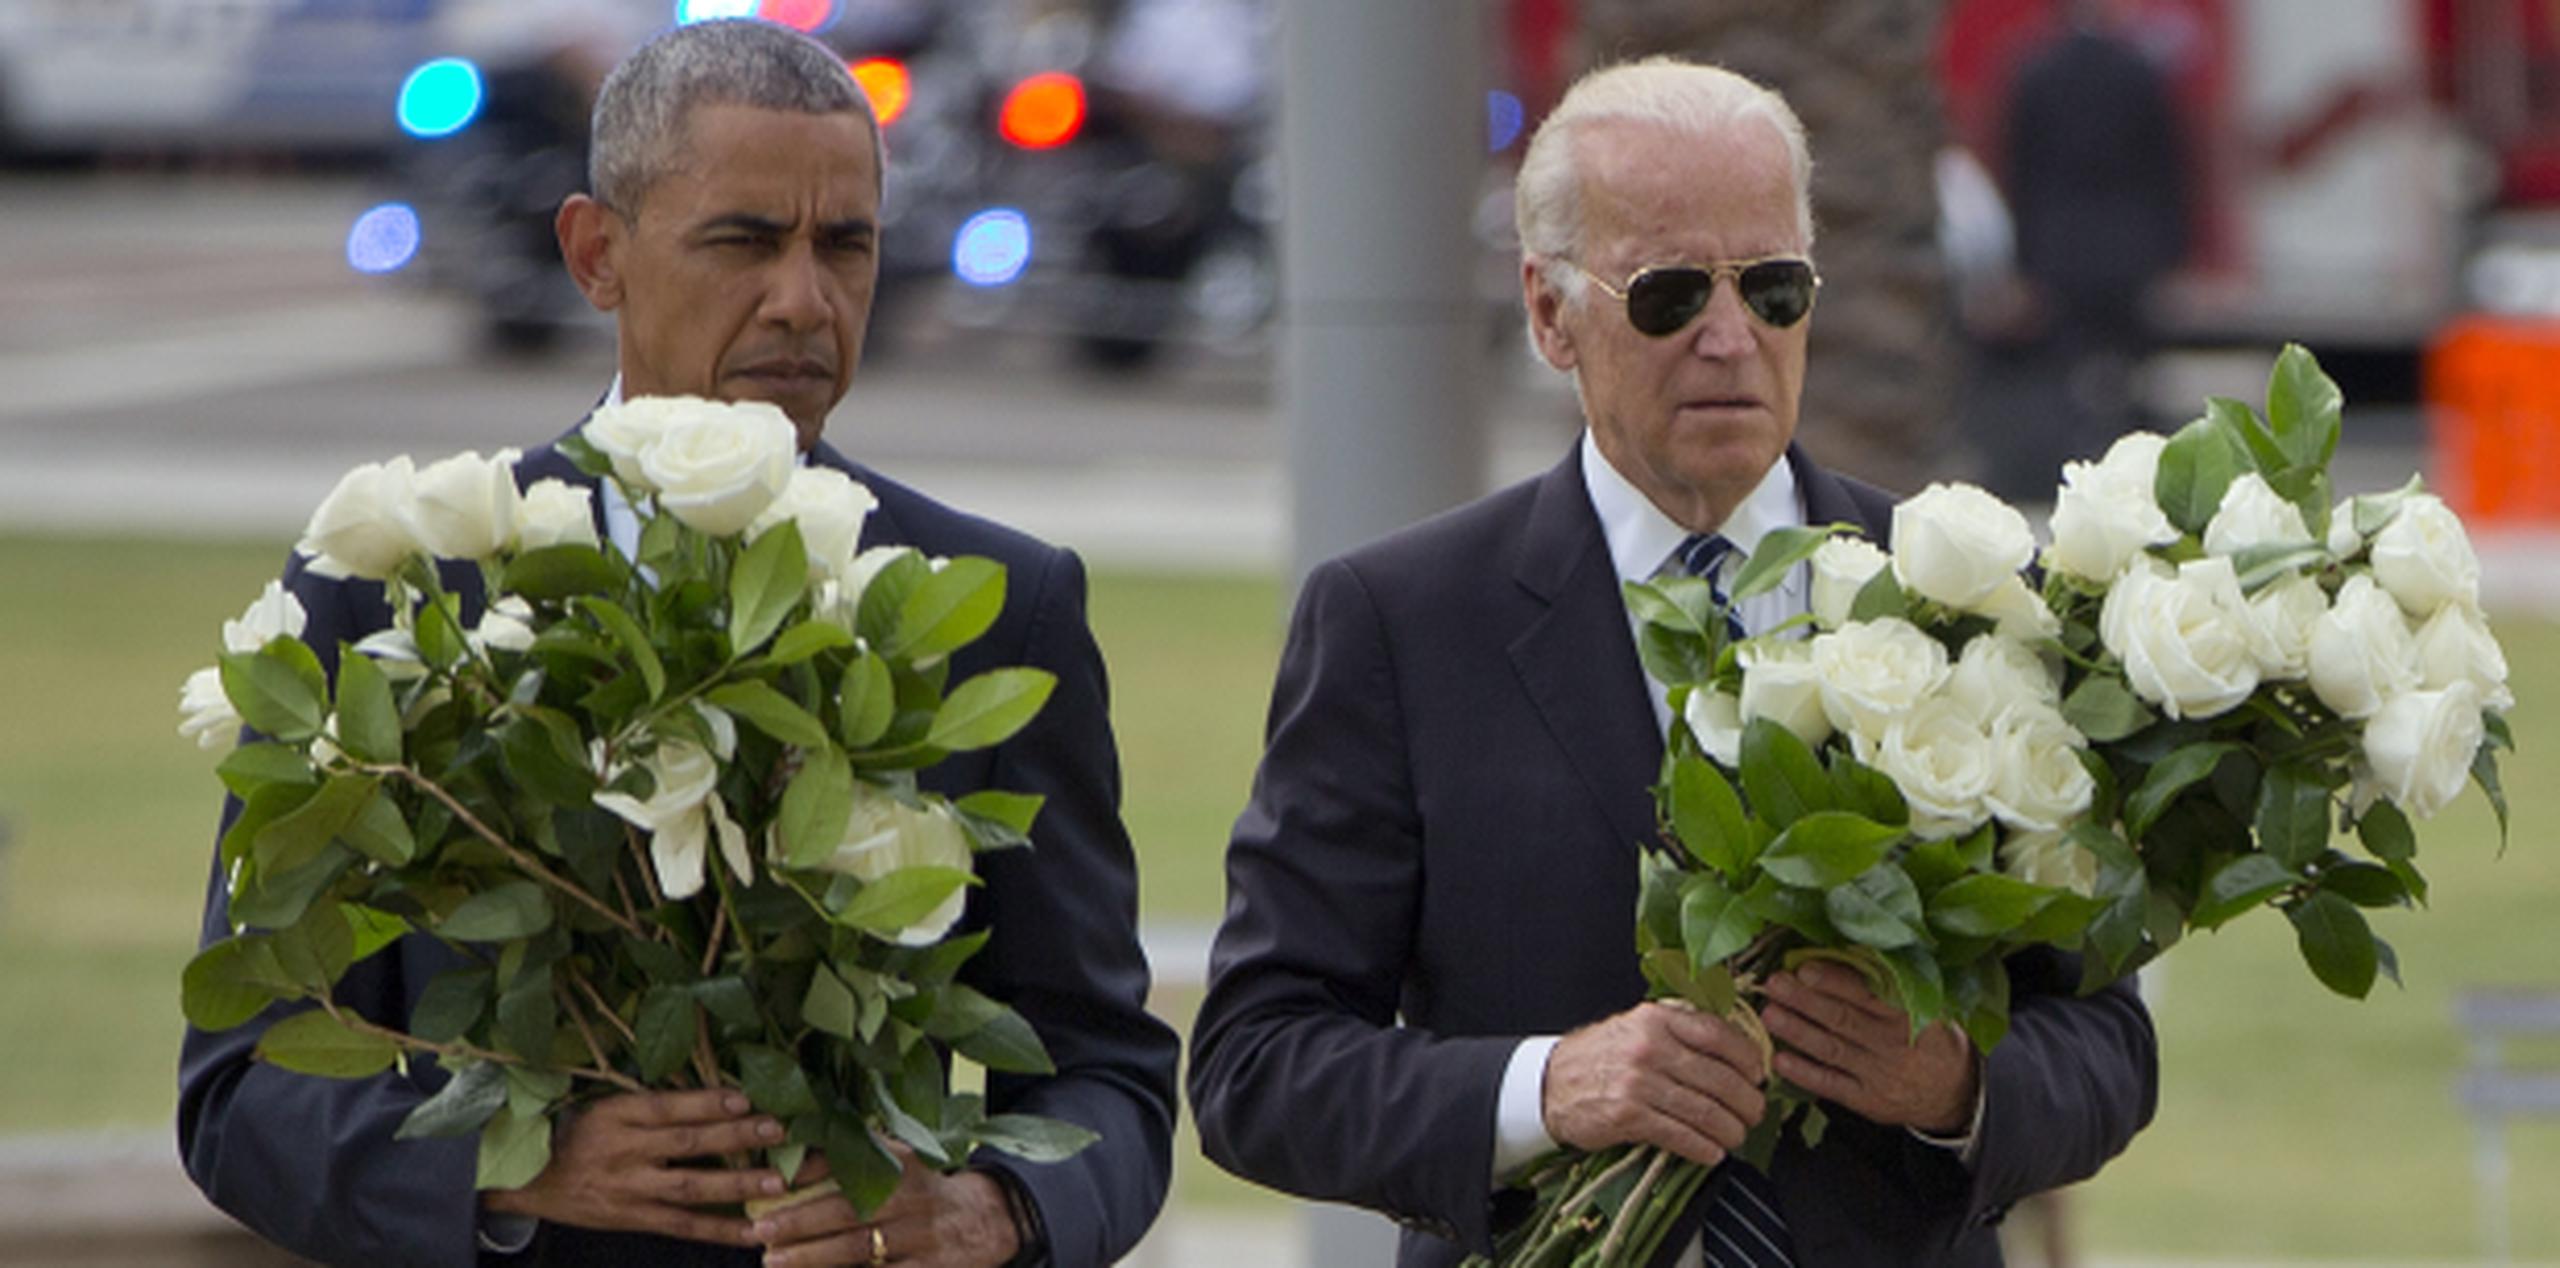 Obama estuvo en Orlando junto a Joe Biden para rendir tributo a las víctimas del tiroteo en Orlando. (Prensa Asociada)